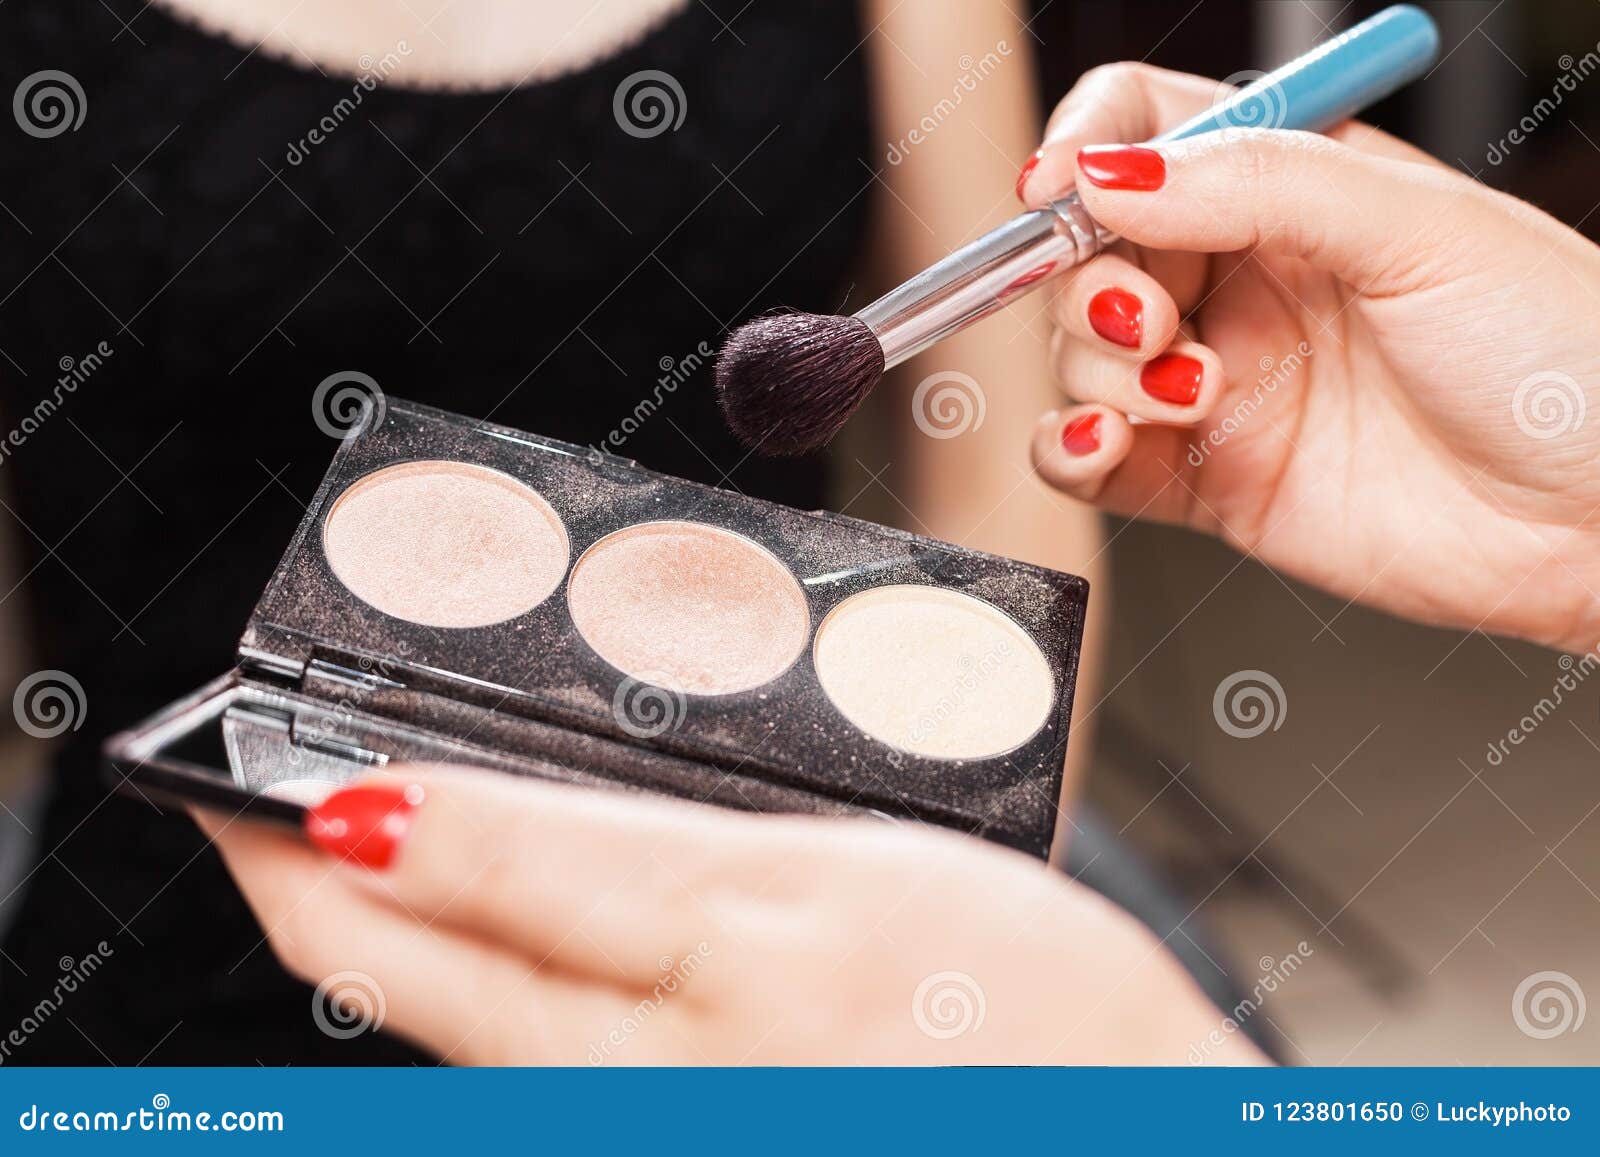 concealer palette for makeup artist